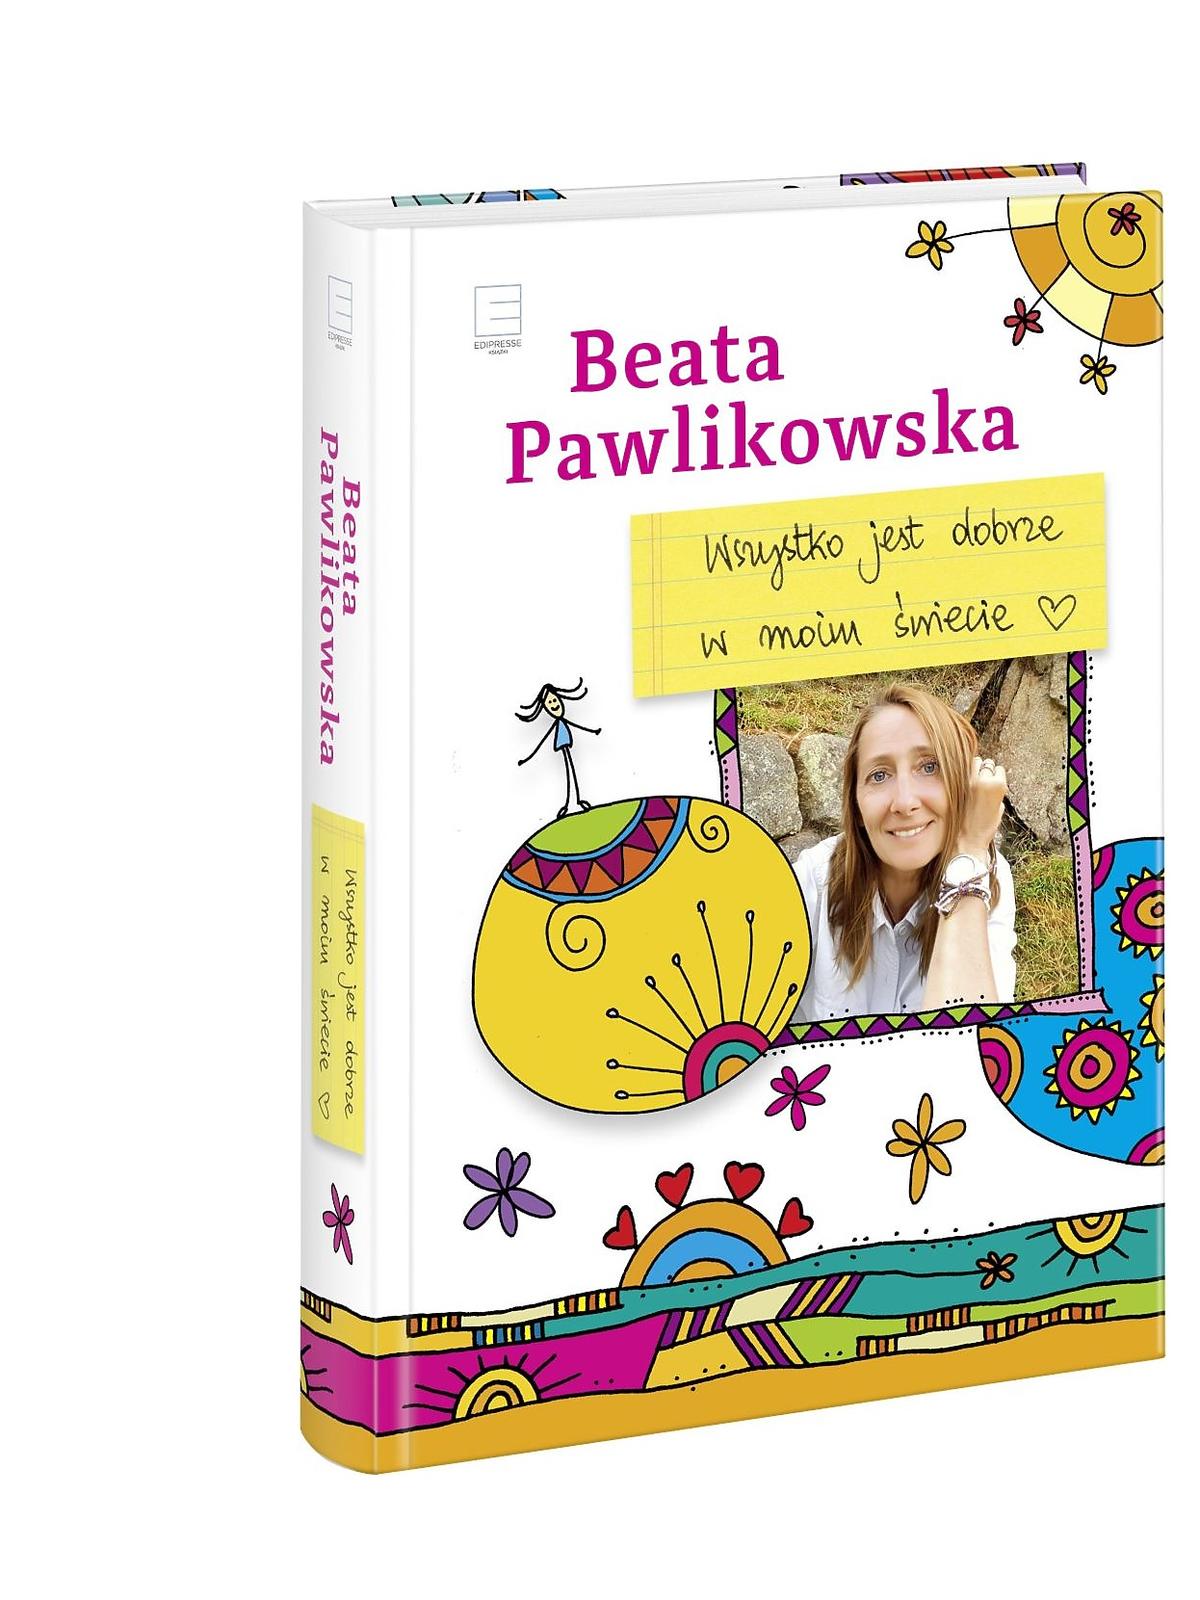 Beata Pawlikowska, „Wszystko jest dobrze w moim świecie”